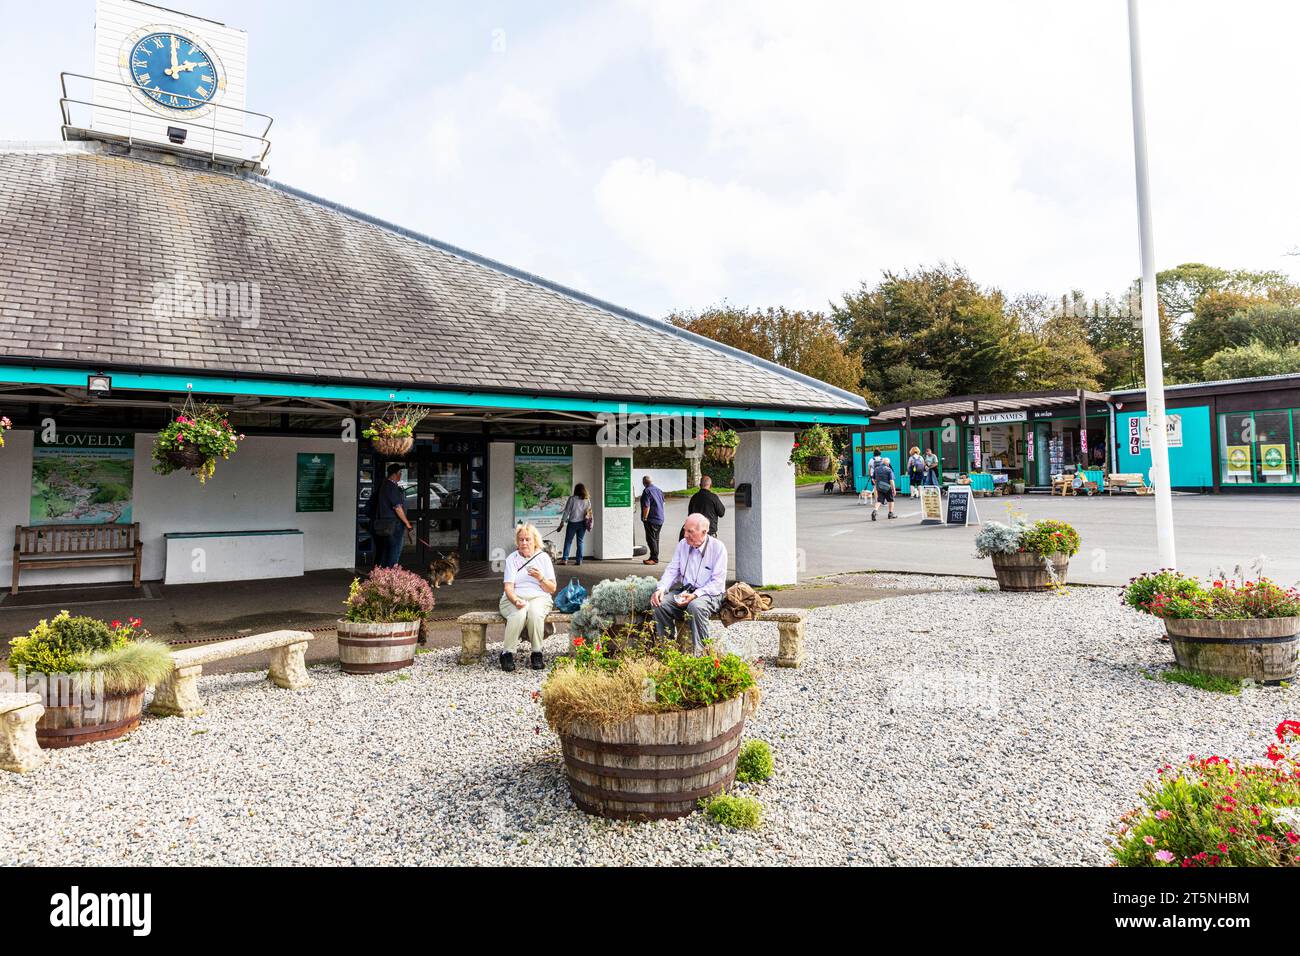 Clovelly visitor centre, Clovelly, Devon, UK, England, Clovelly UK, Clovelly Devon, Clovelly village, Clovelly England, villages, village, quaint, Stock Photo